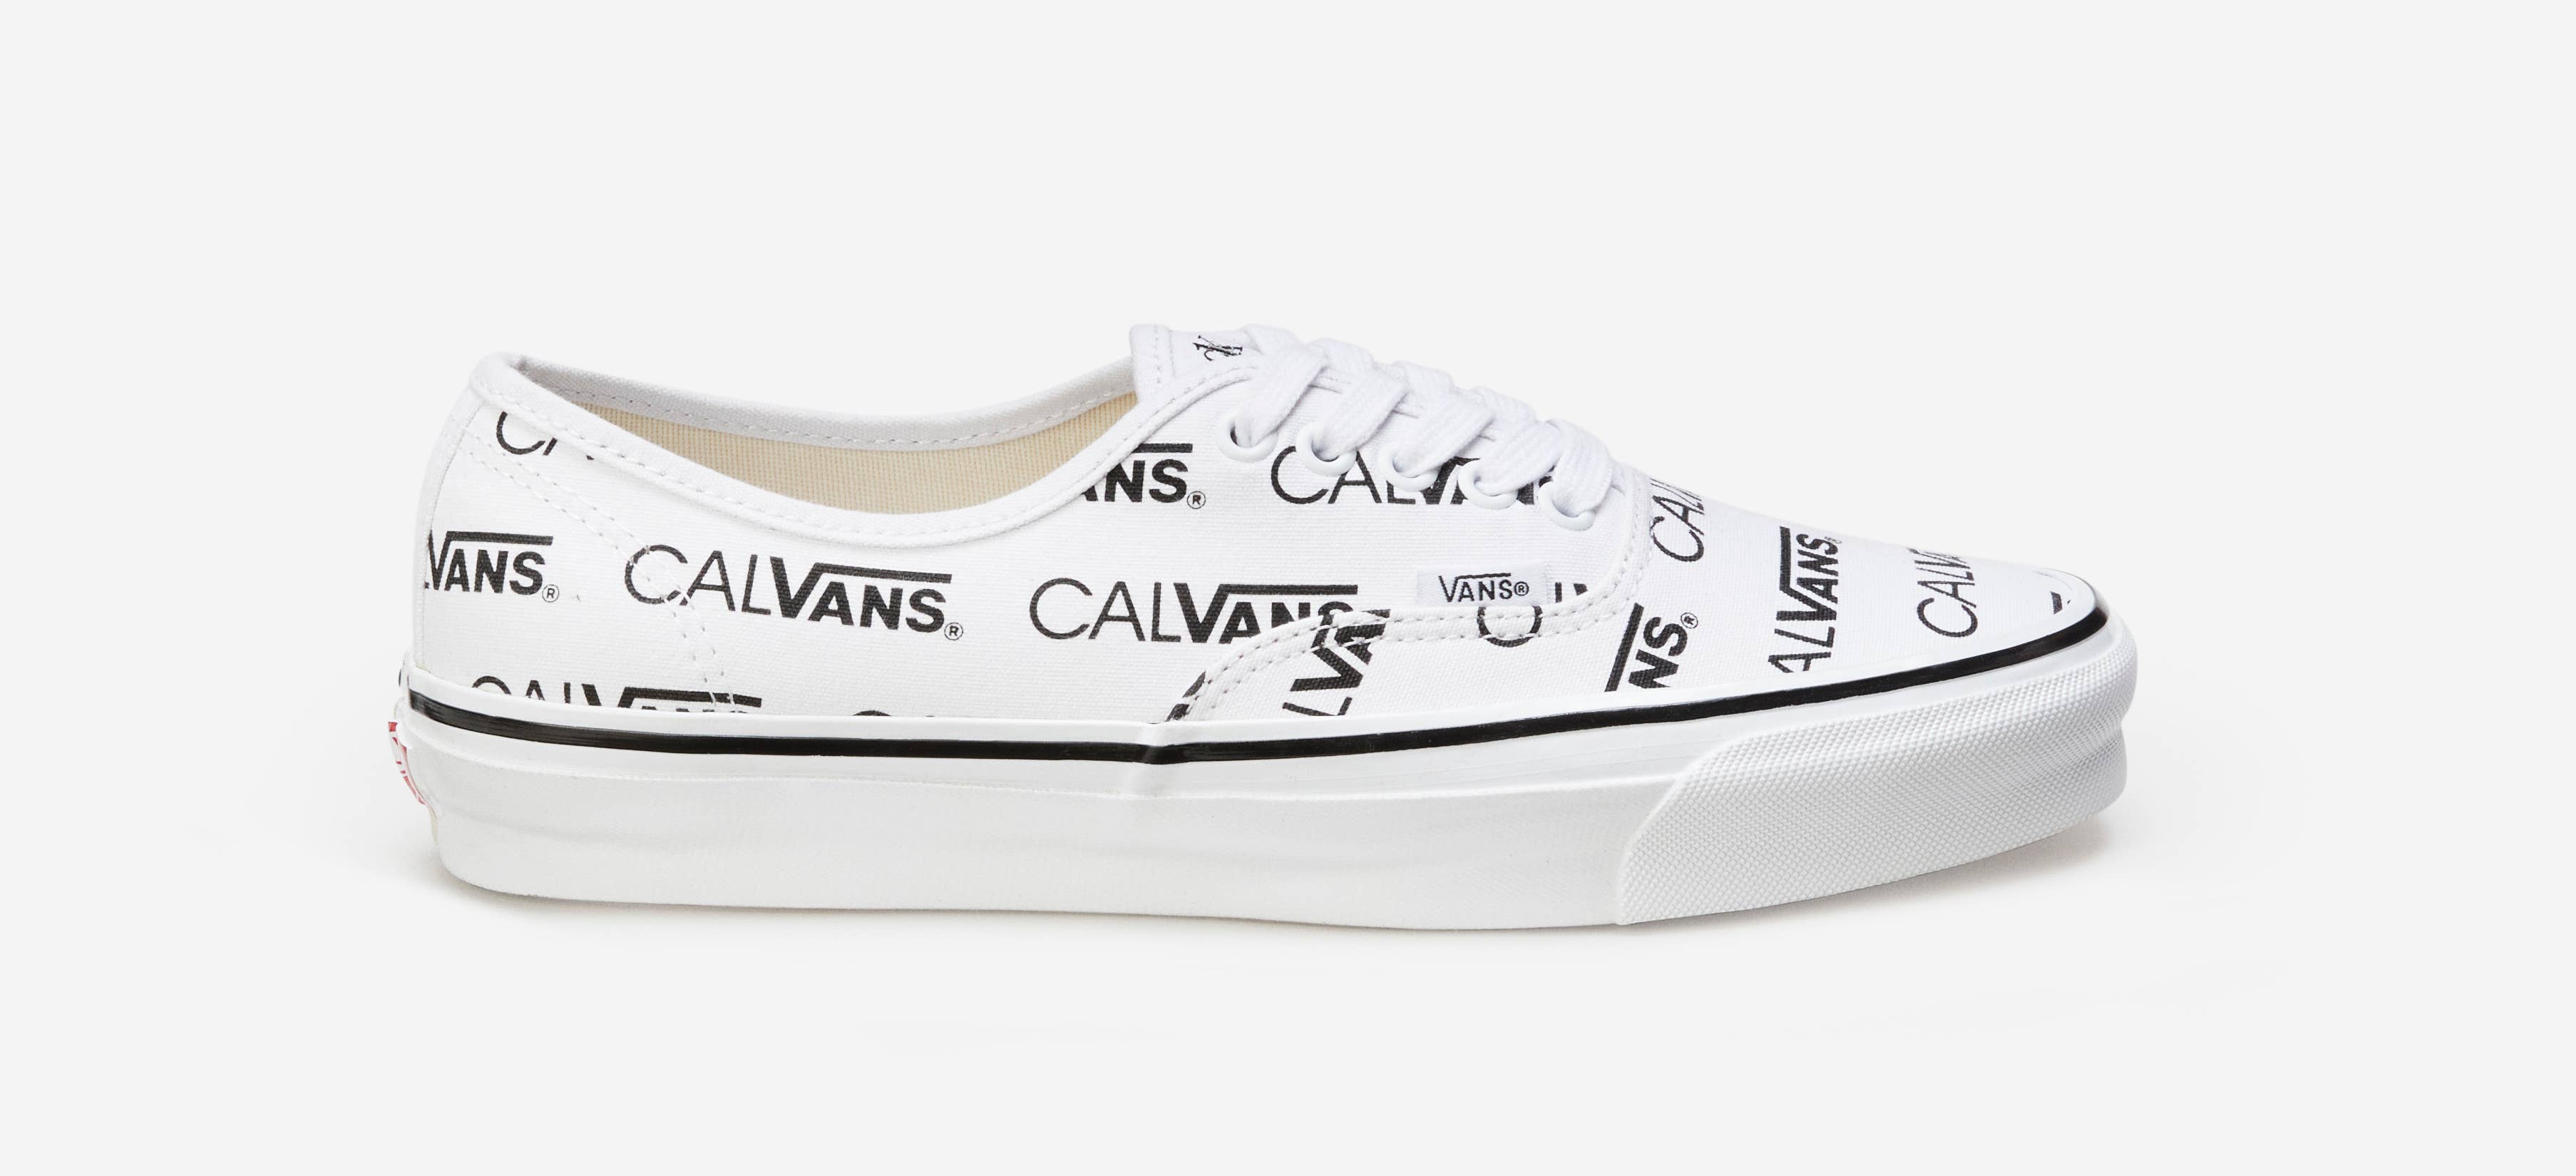 Palace x Calvin Klein x Vans Authentic 'Calvans'